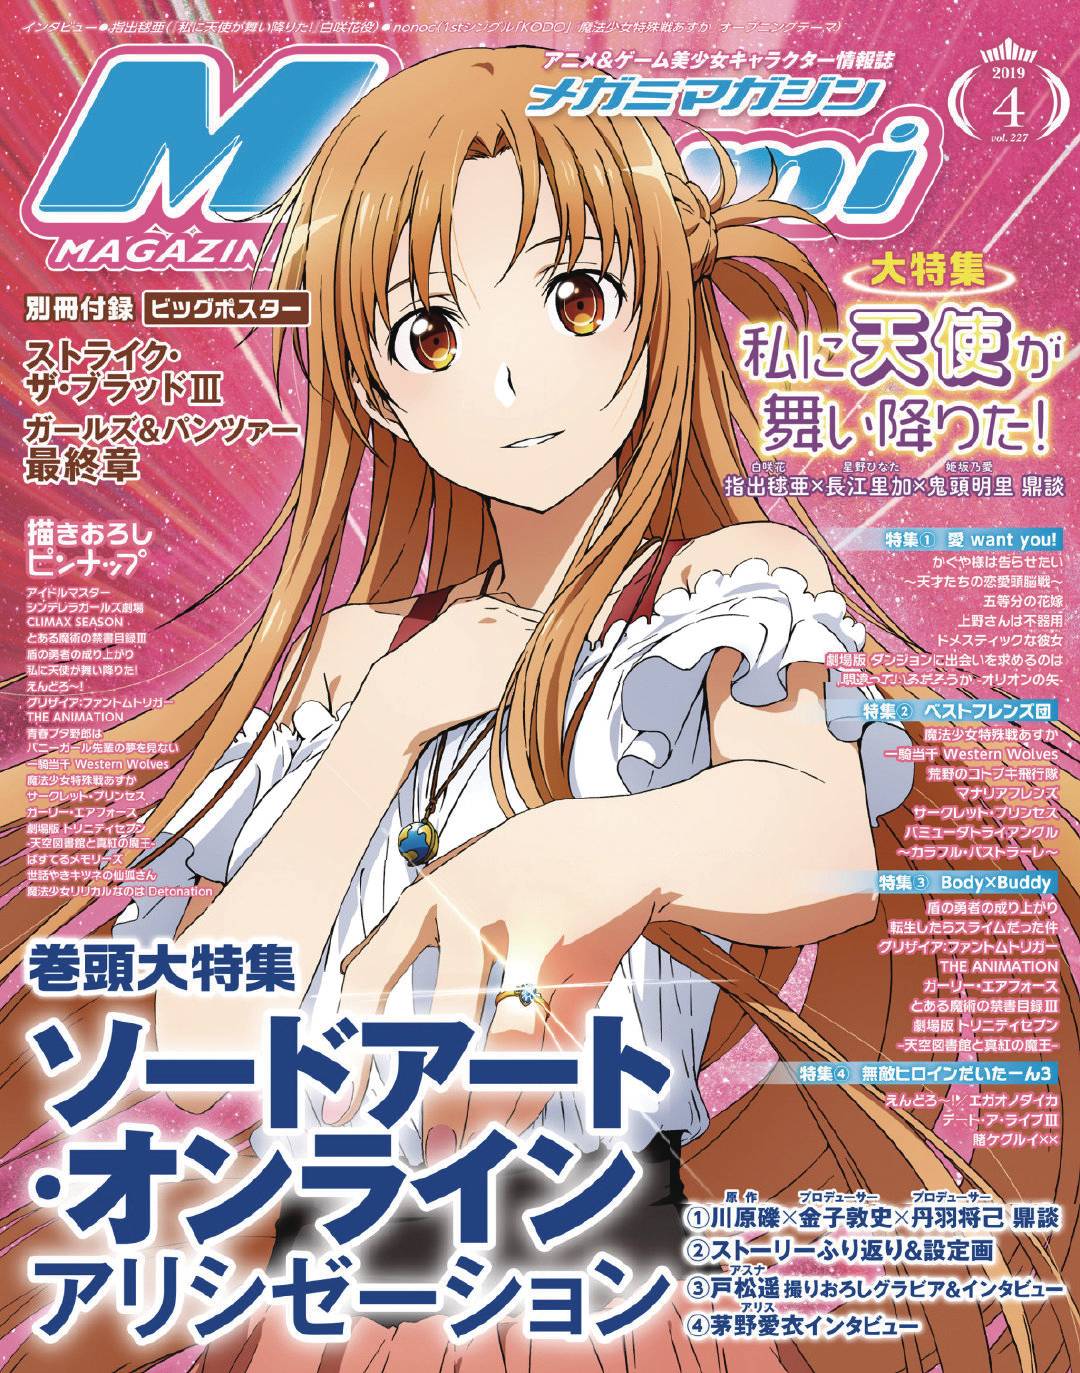 Megami September 2019 Volume 158